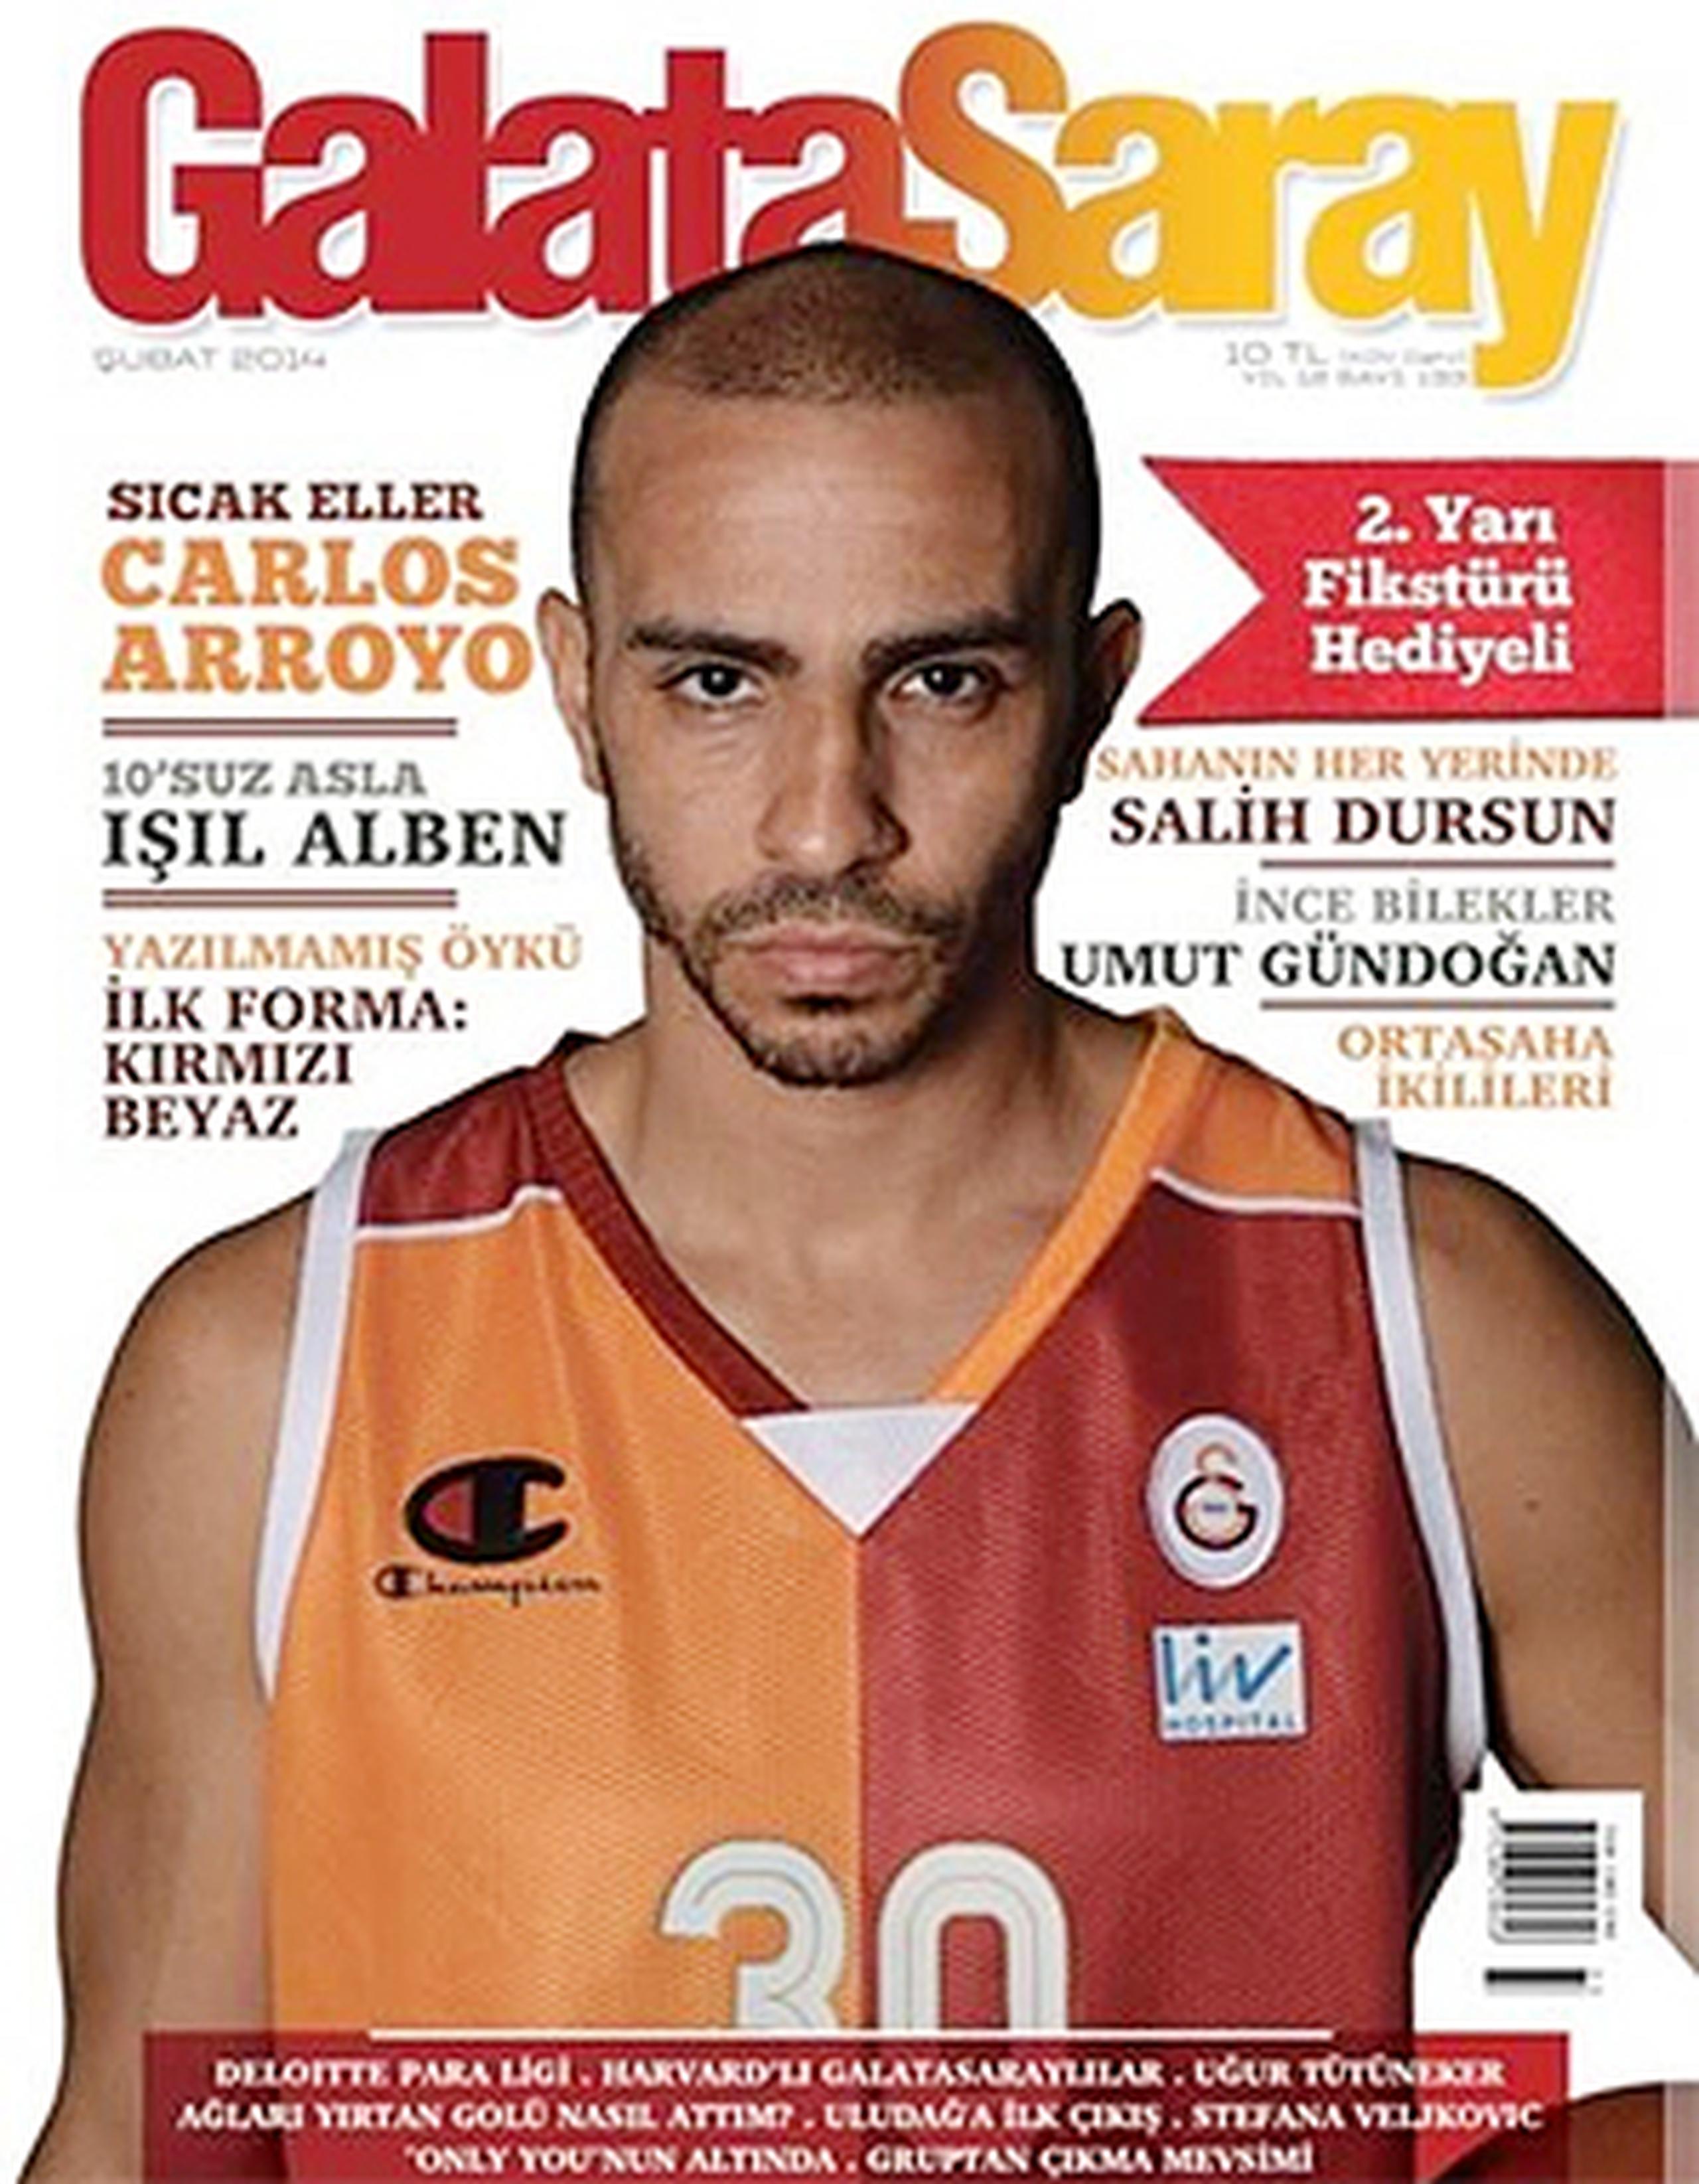 La revista Galatasaray Magazine realizó una profunda entrevista con el fajardeño Carlos Arroyo. (Facebook)